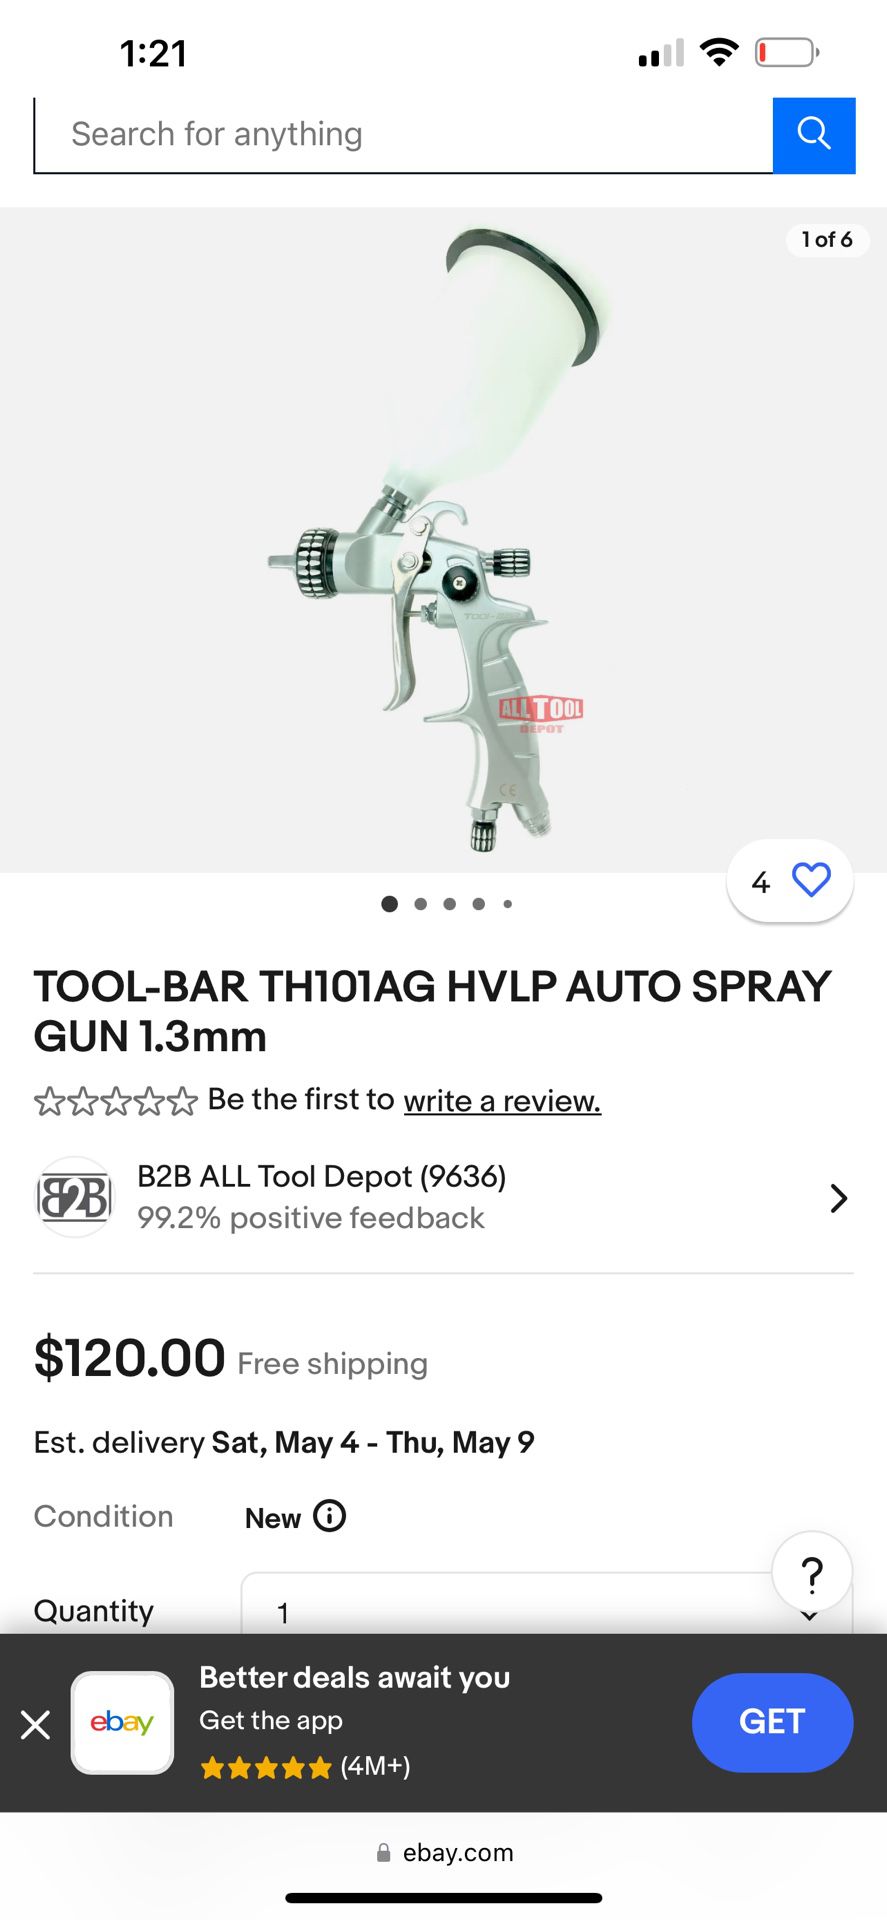 TH101AG Spay Gun